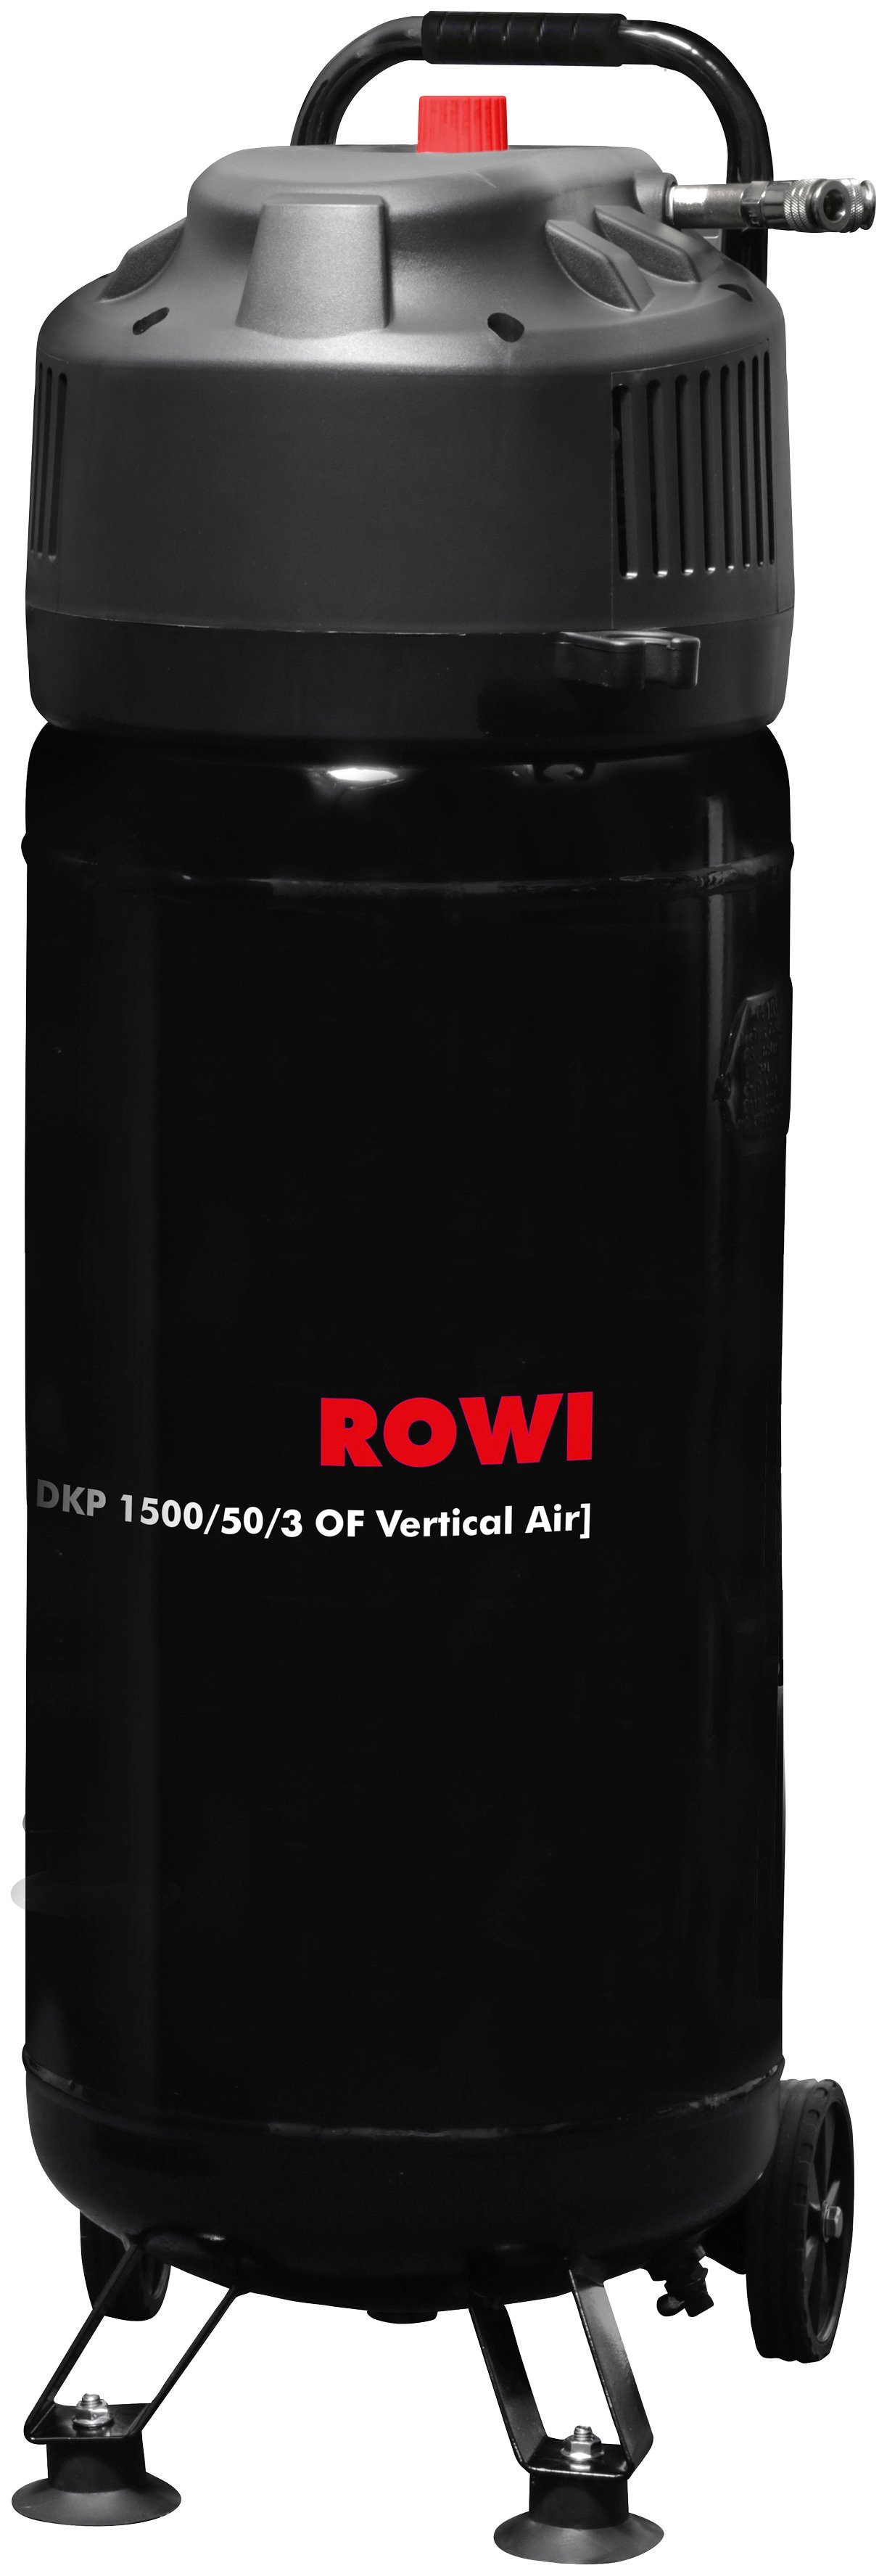 1500 ROWI 50 10 1500/50/3 Vertical max. l bar, Kompressor W, DKP Air, OF